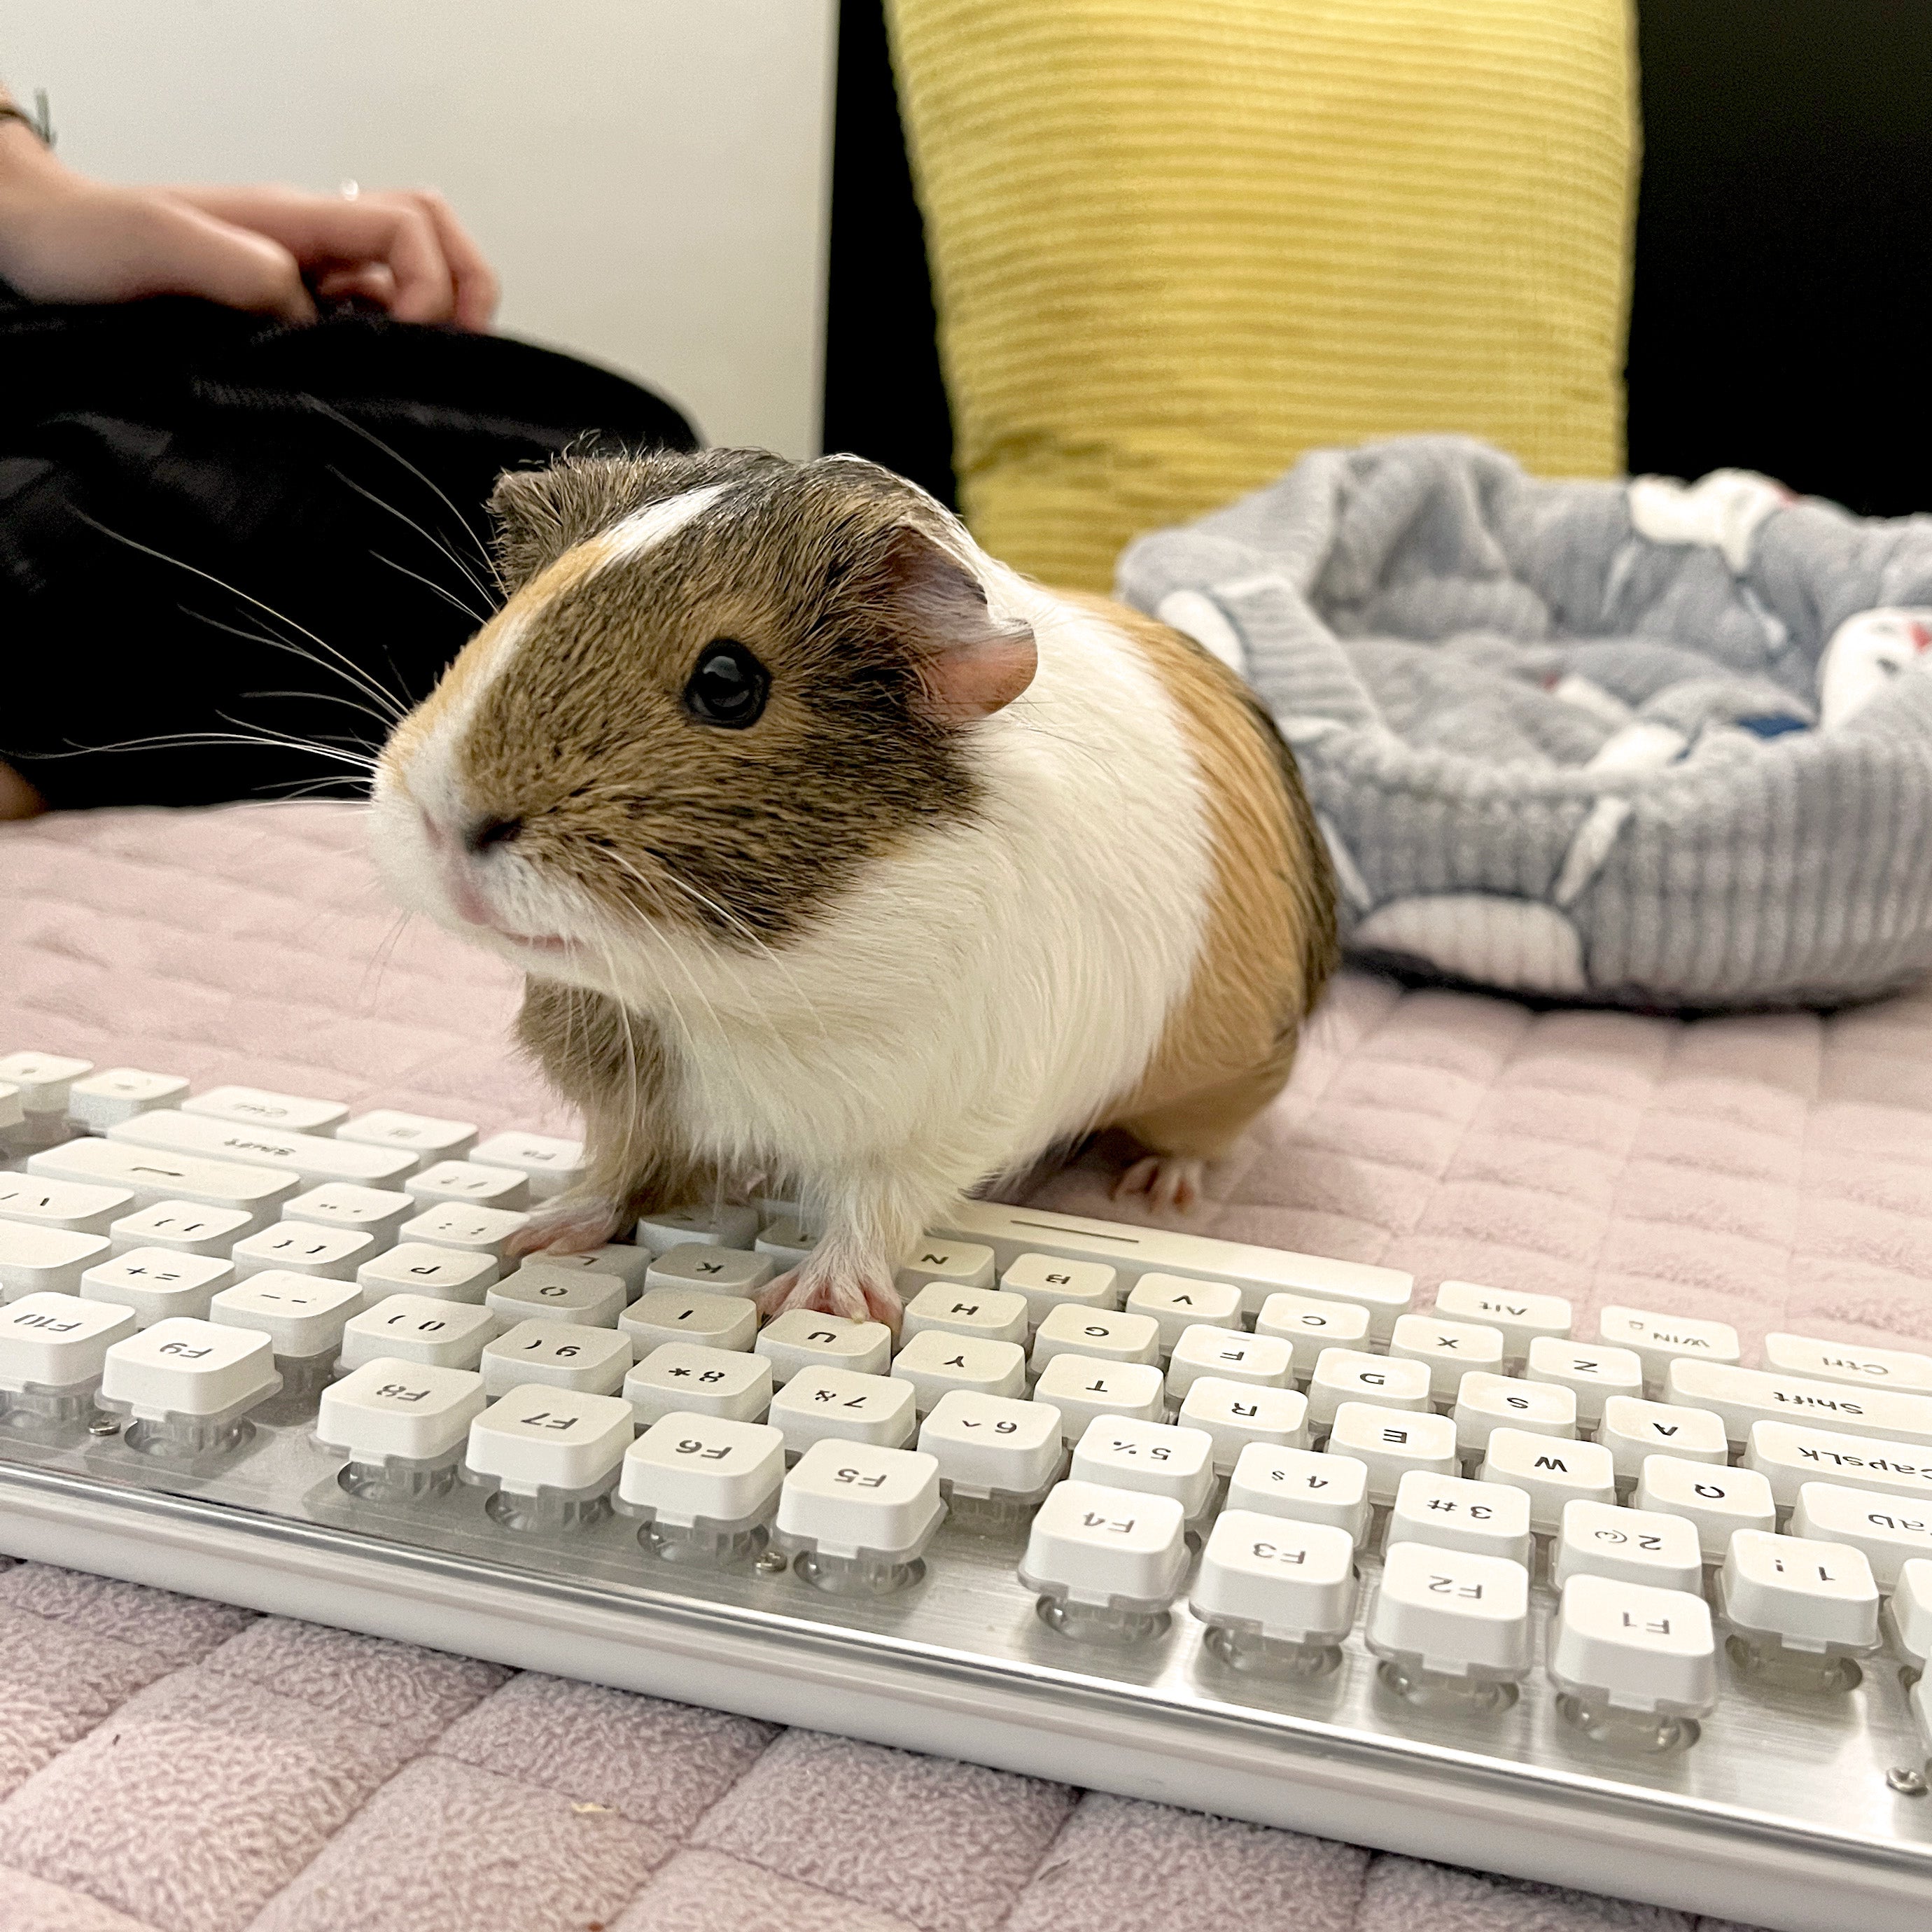 Guinea pig on a keyboard